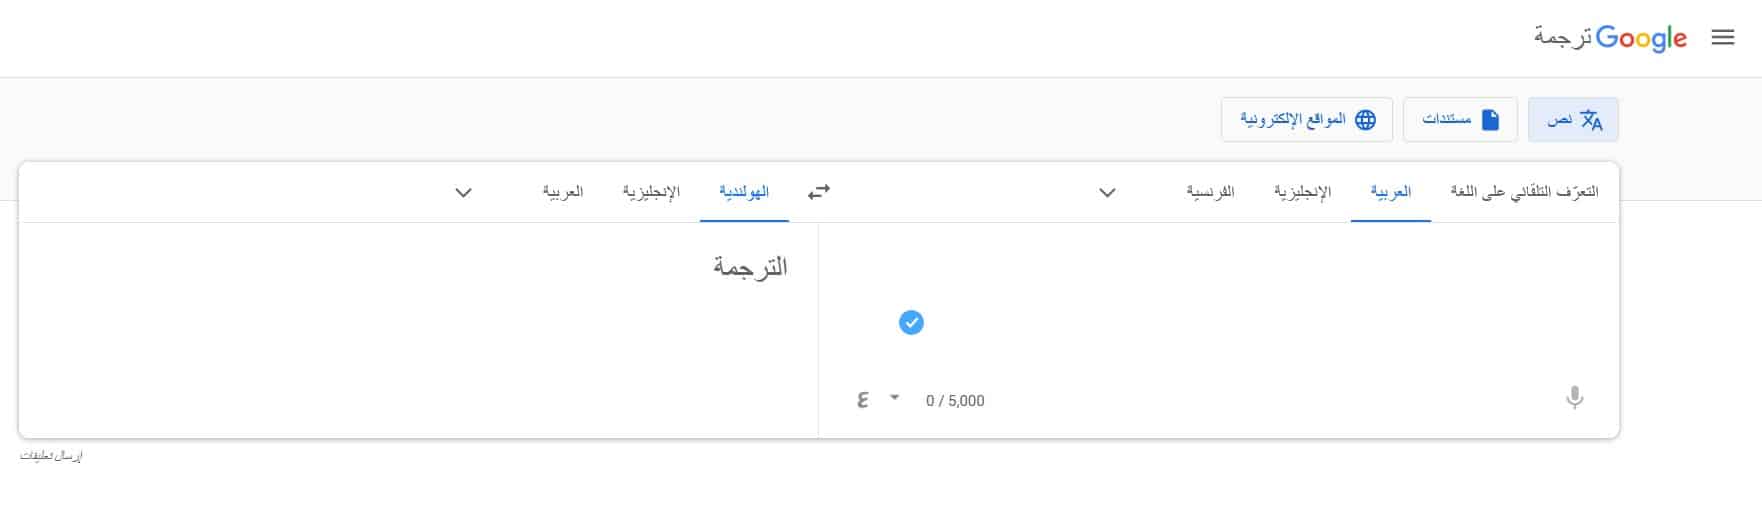 الترجمة من العربية إلى الهولندية